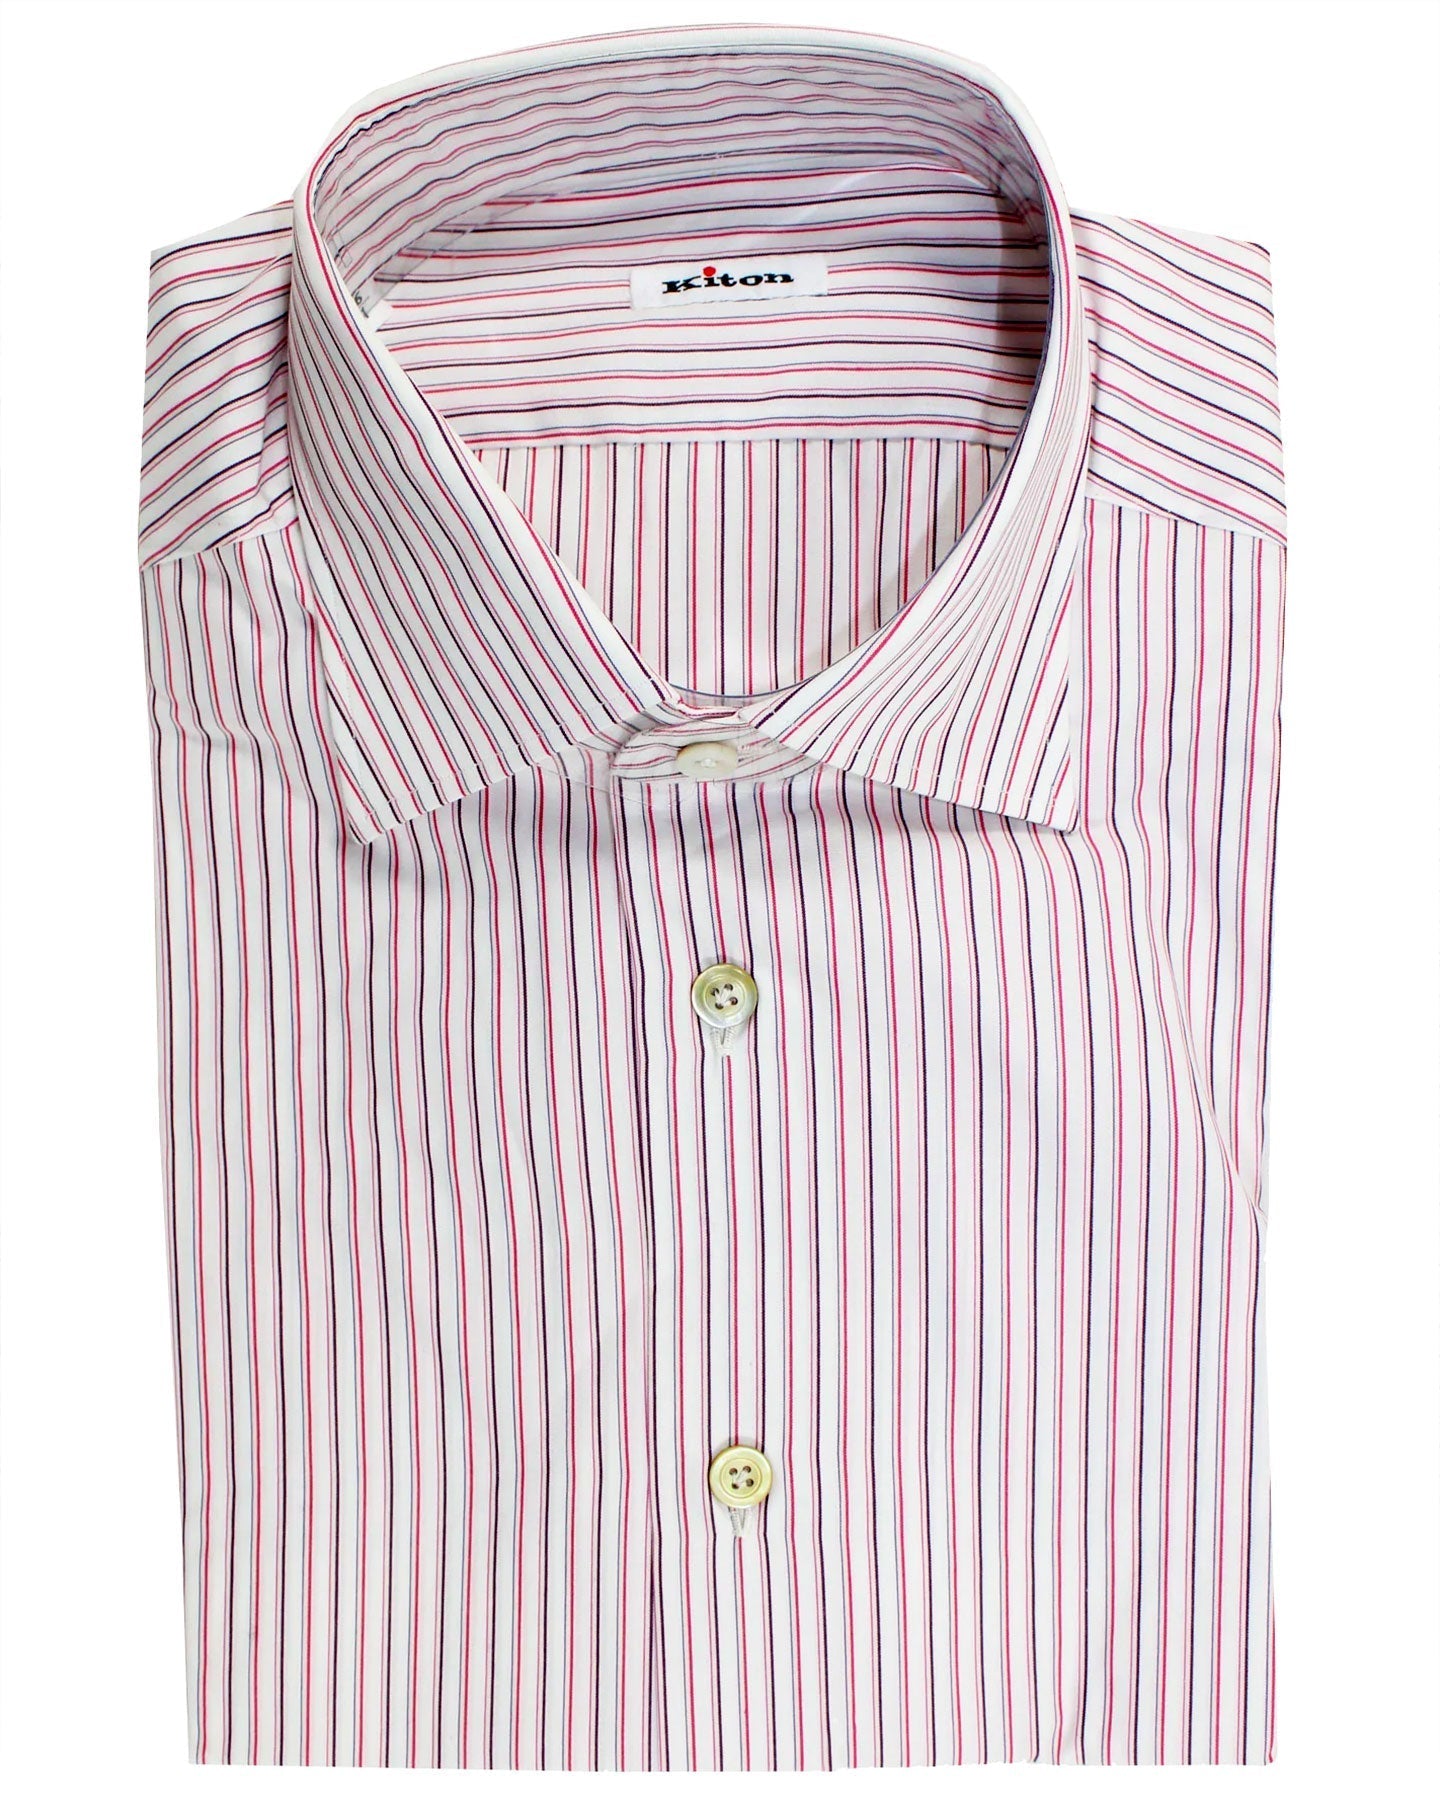 Kiton Dress Shirt White Pink Purple Stripes 37 - 14 1/2 SALE